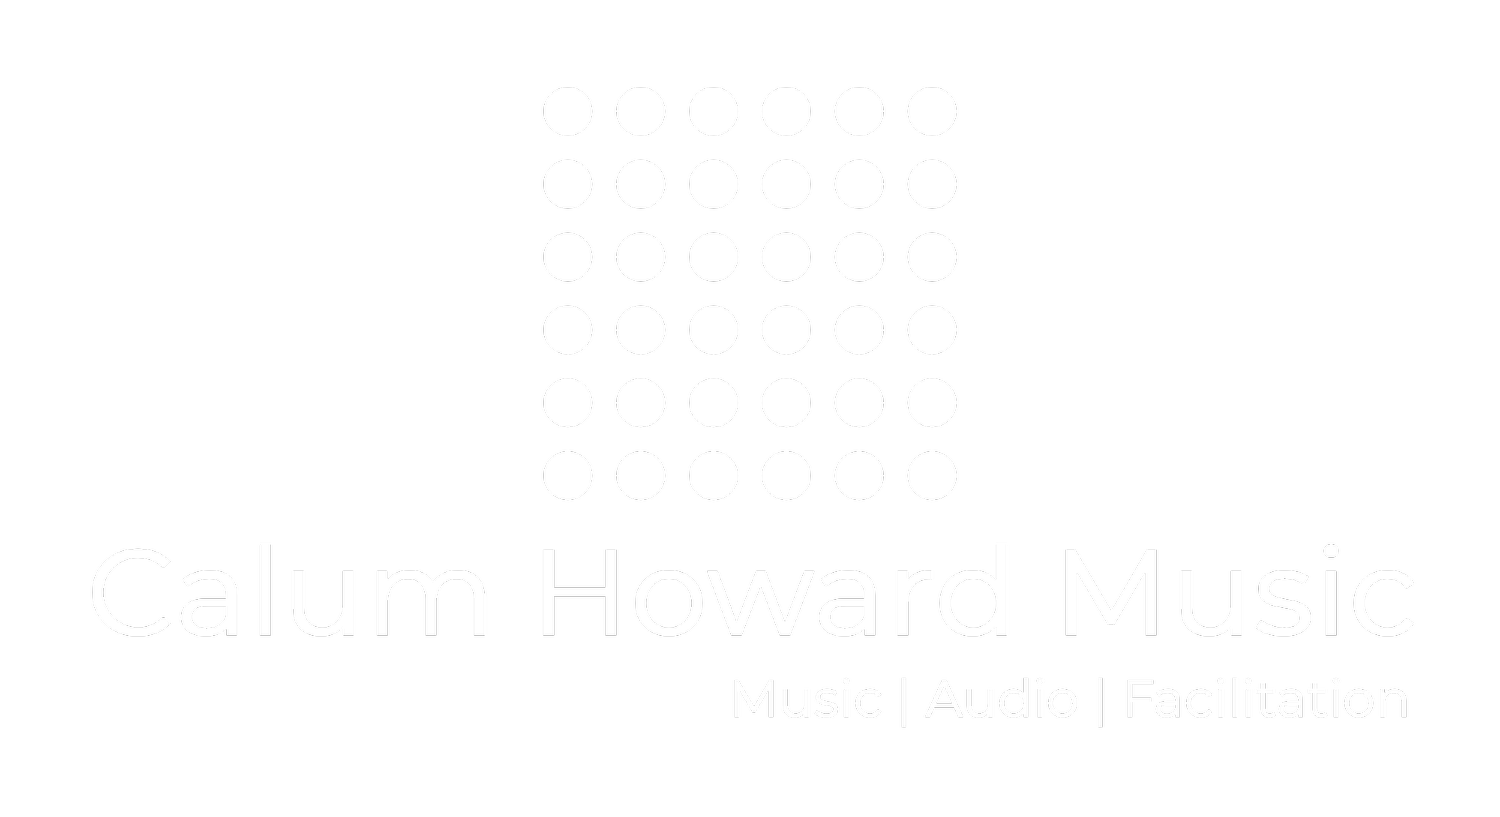 Calum Howard Music